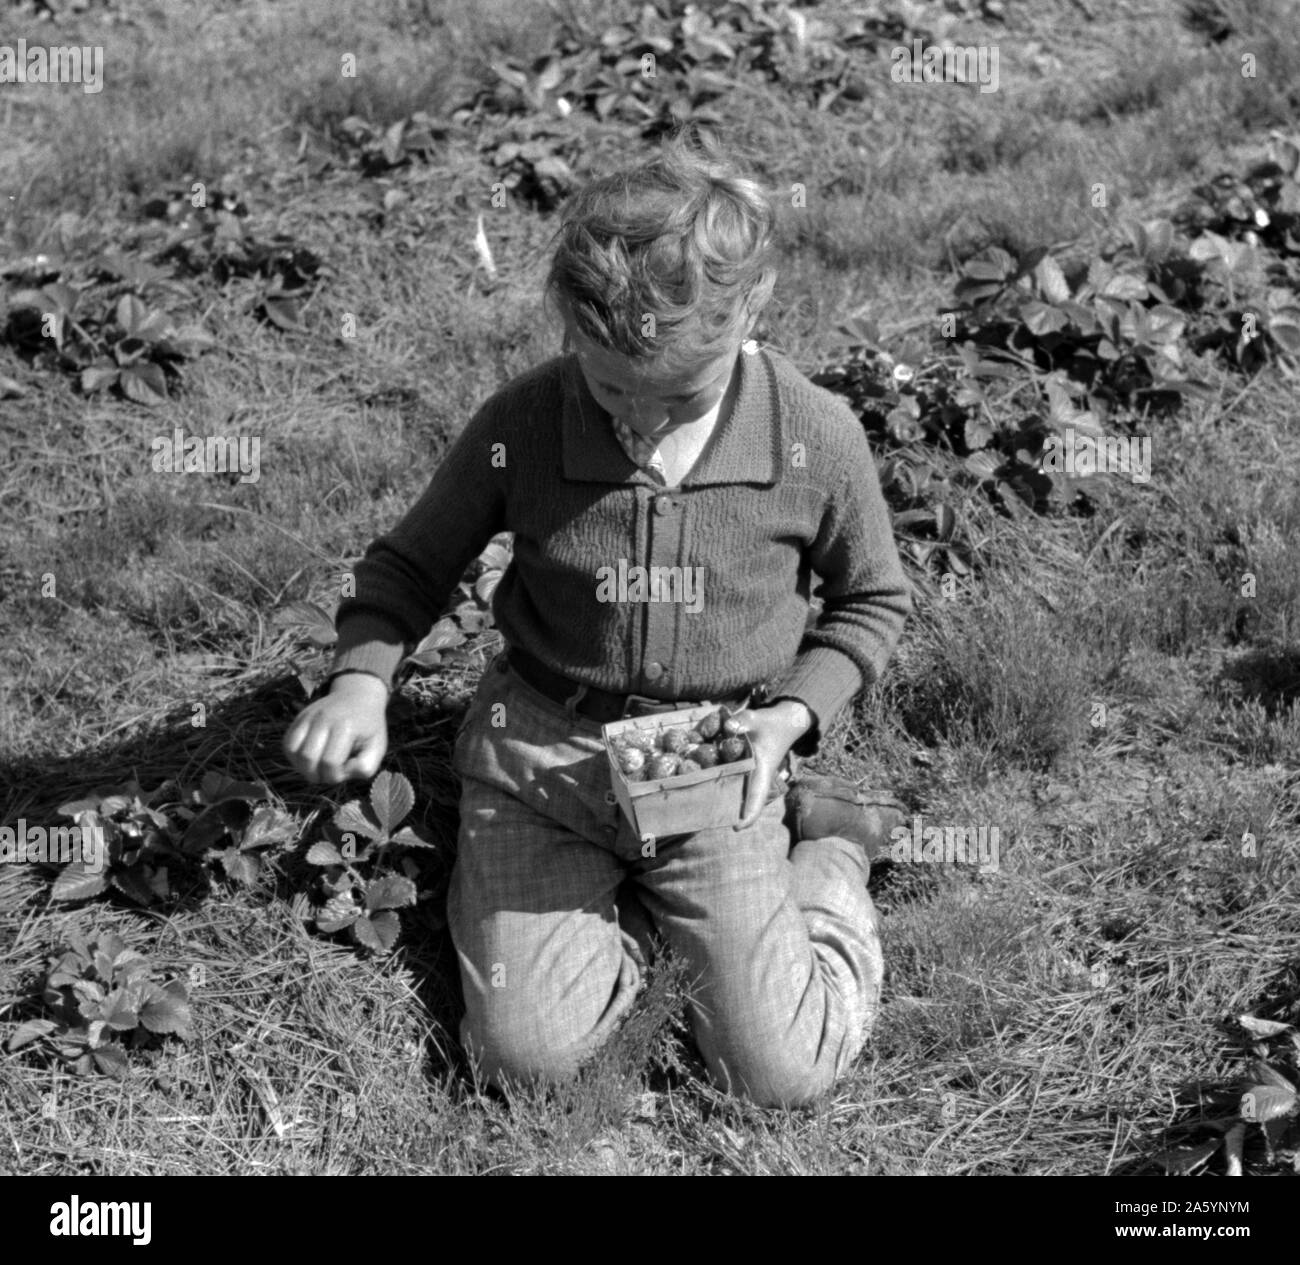 Kind der weißen Migrant berry Arbeiter Kommissionierung Erdbeeren in der Nähe von Ponchatoula, Louisiana. Von Russell Lee, 1903-1986, Fotograf Datum 19390101. Stockfoto